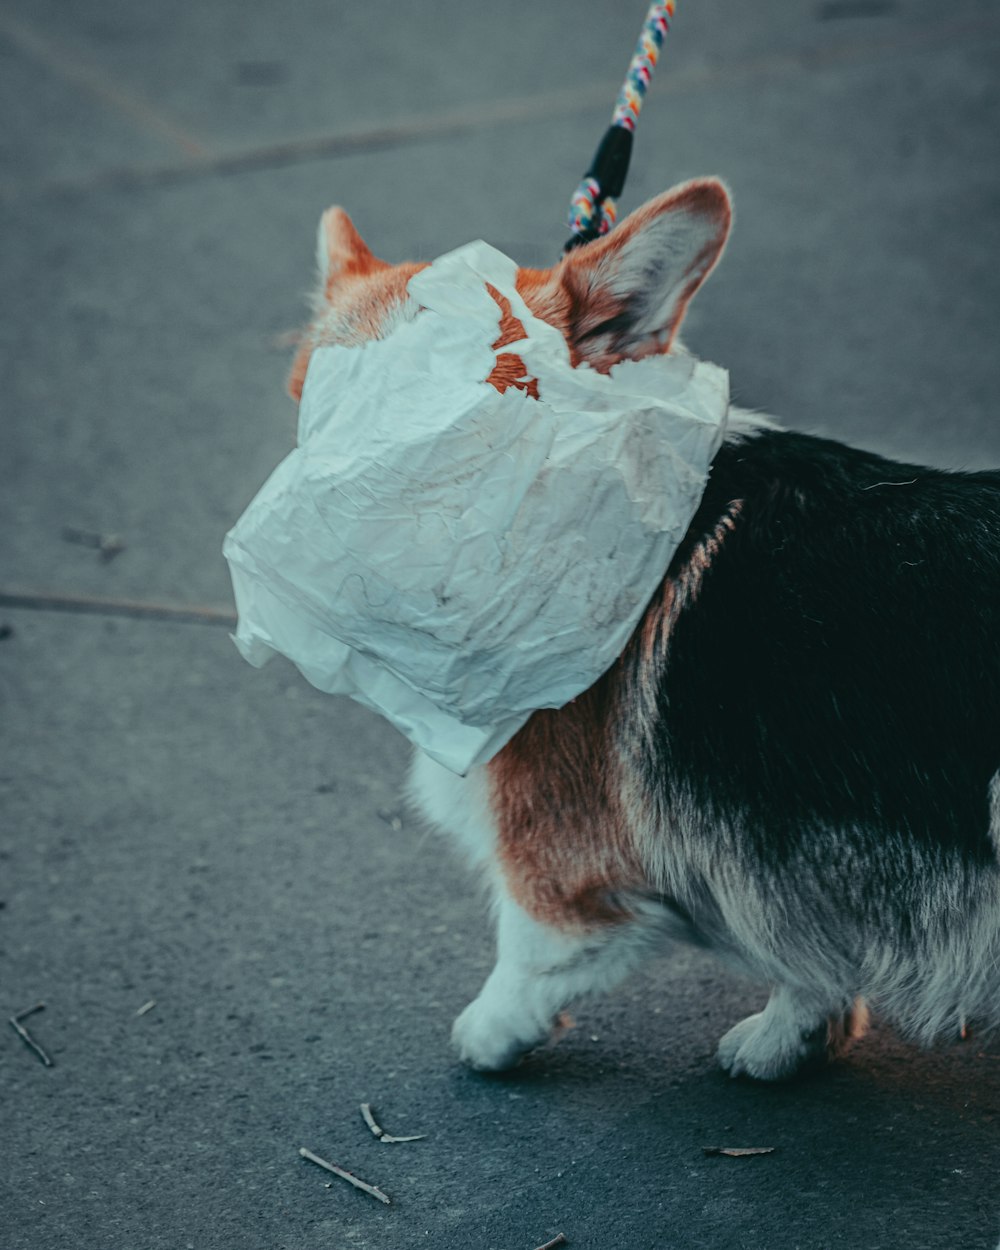 a corgi dog with a paper bag on its head